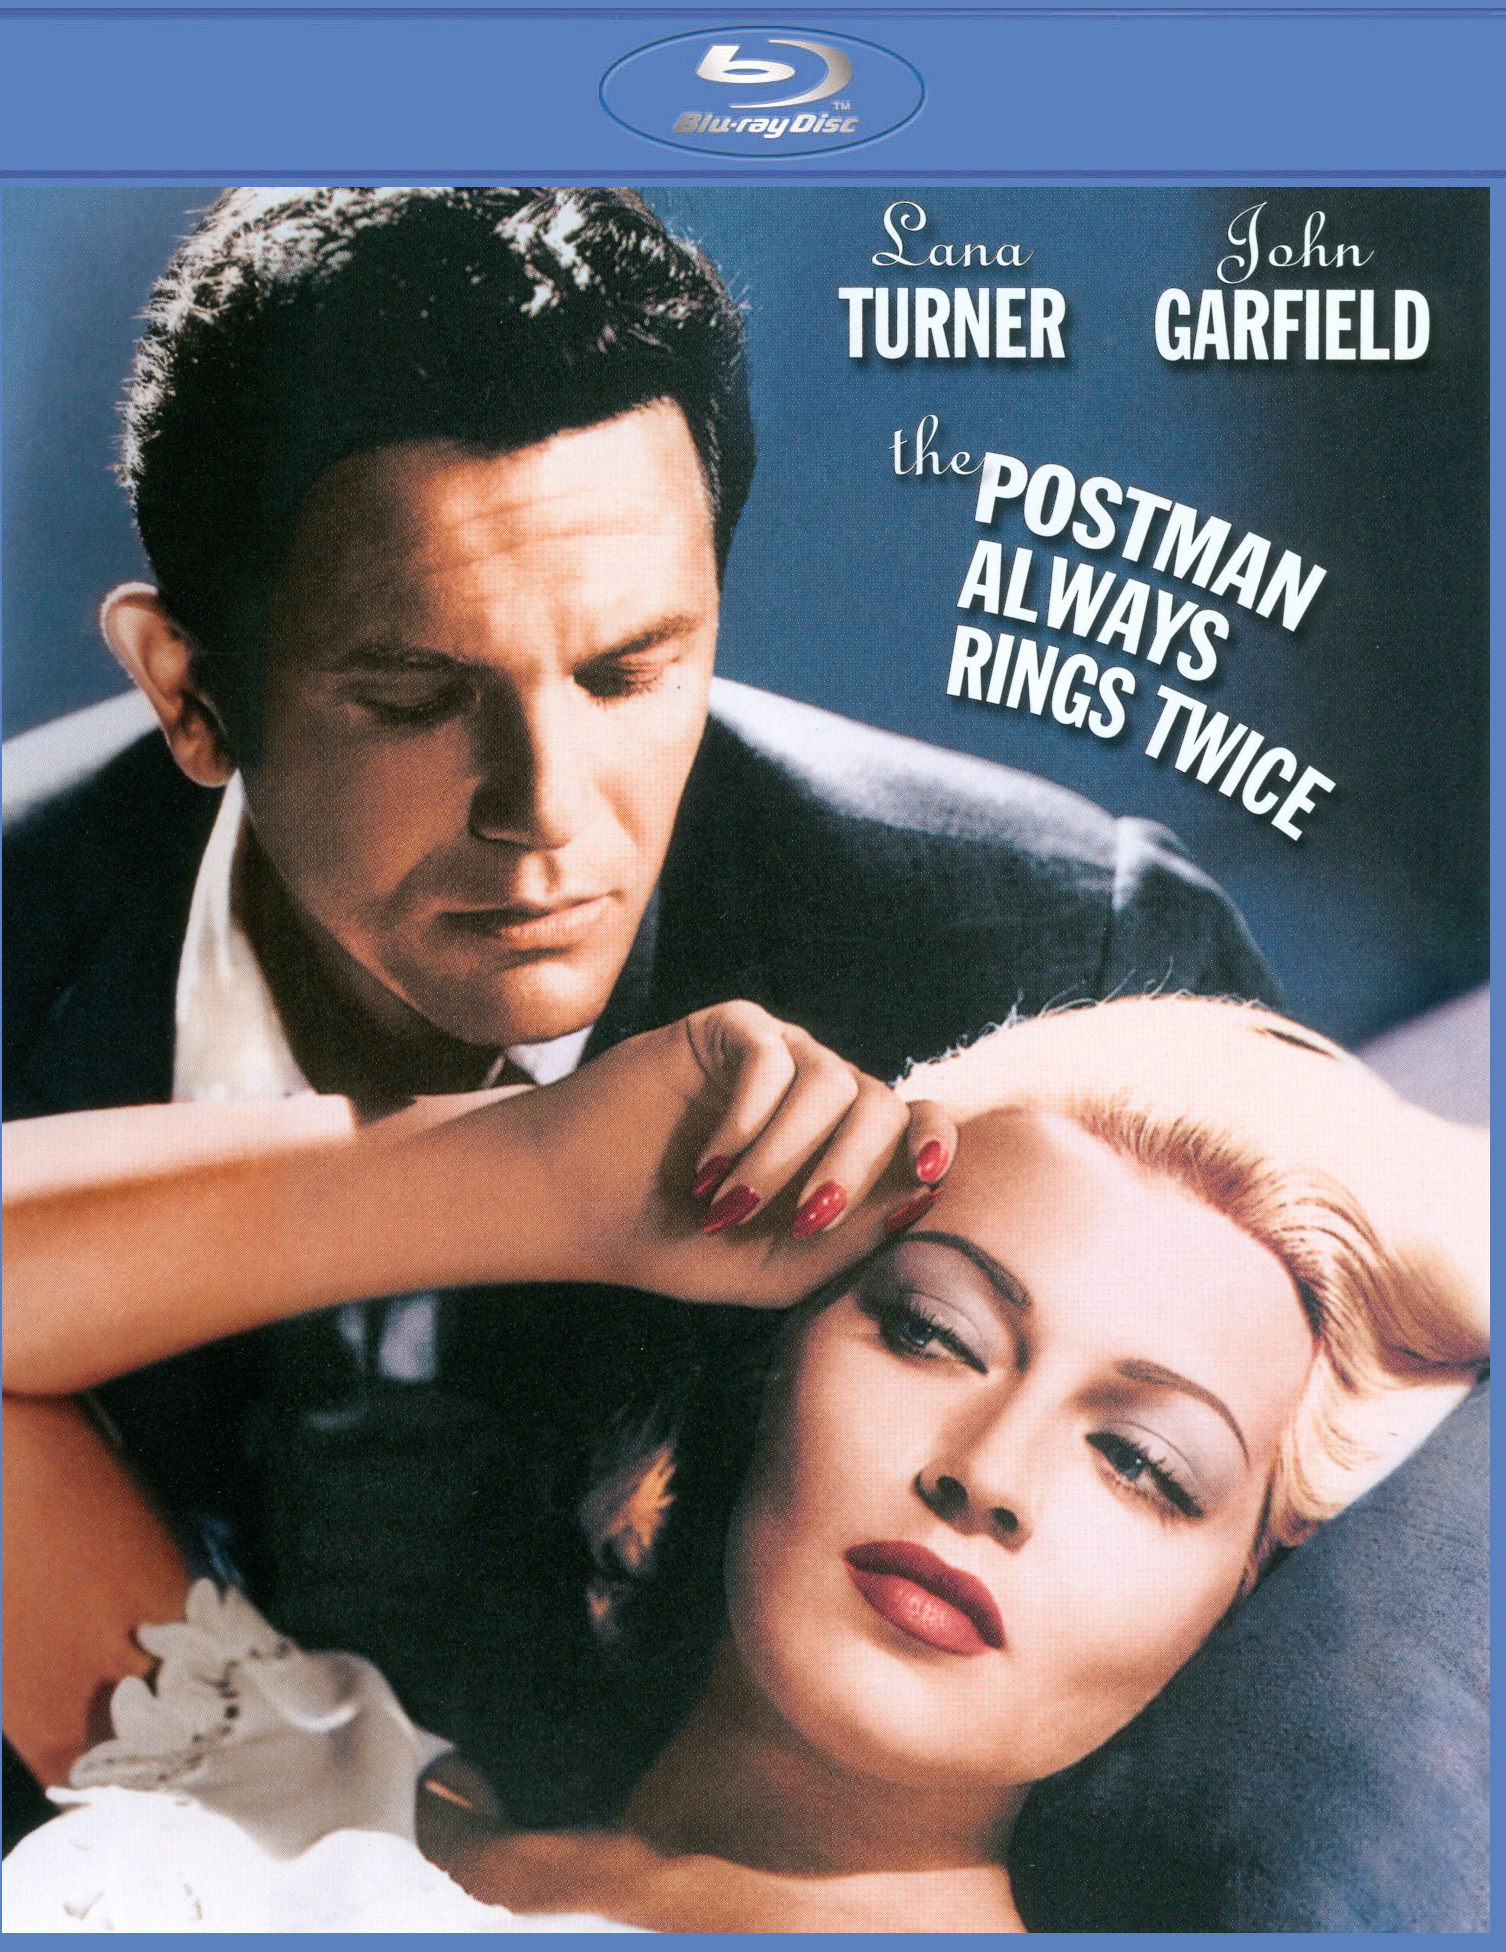 The Postman Always Rings Twice [Blu-ray] [1946] - Best Buy